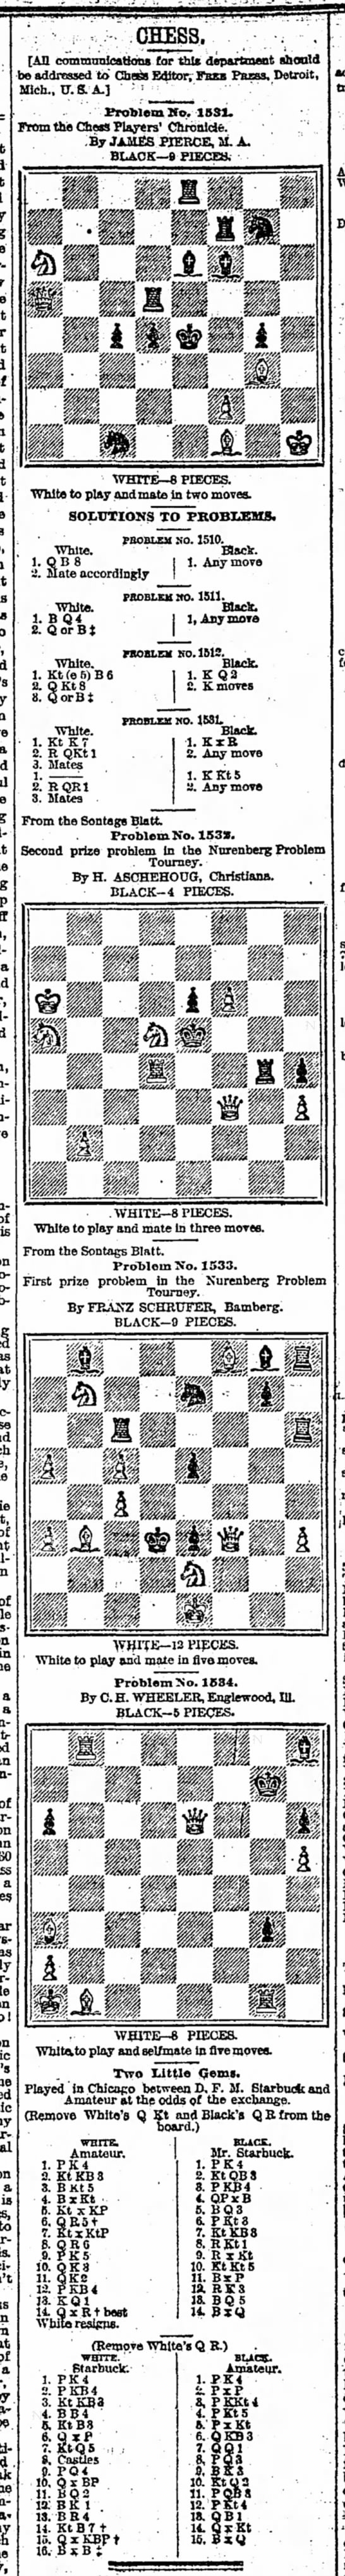 Chess; Starbuck 2 games - 